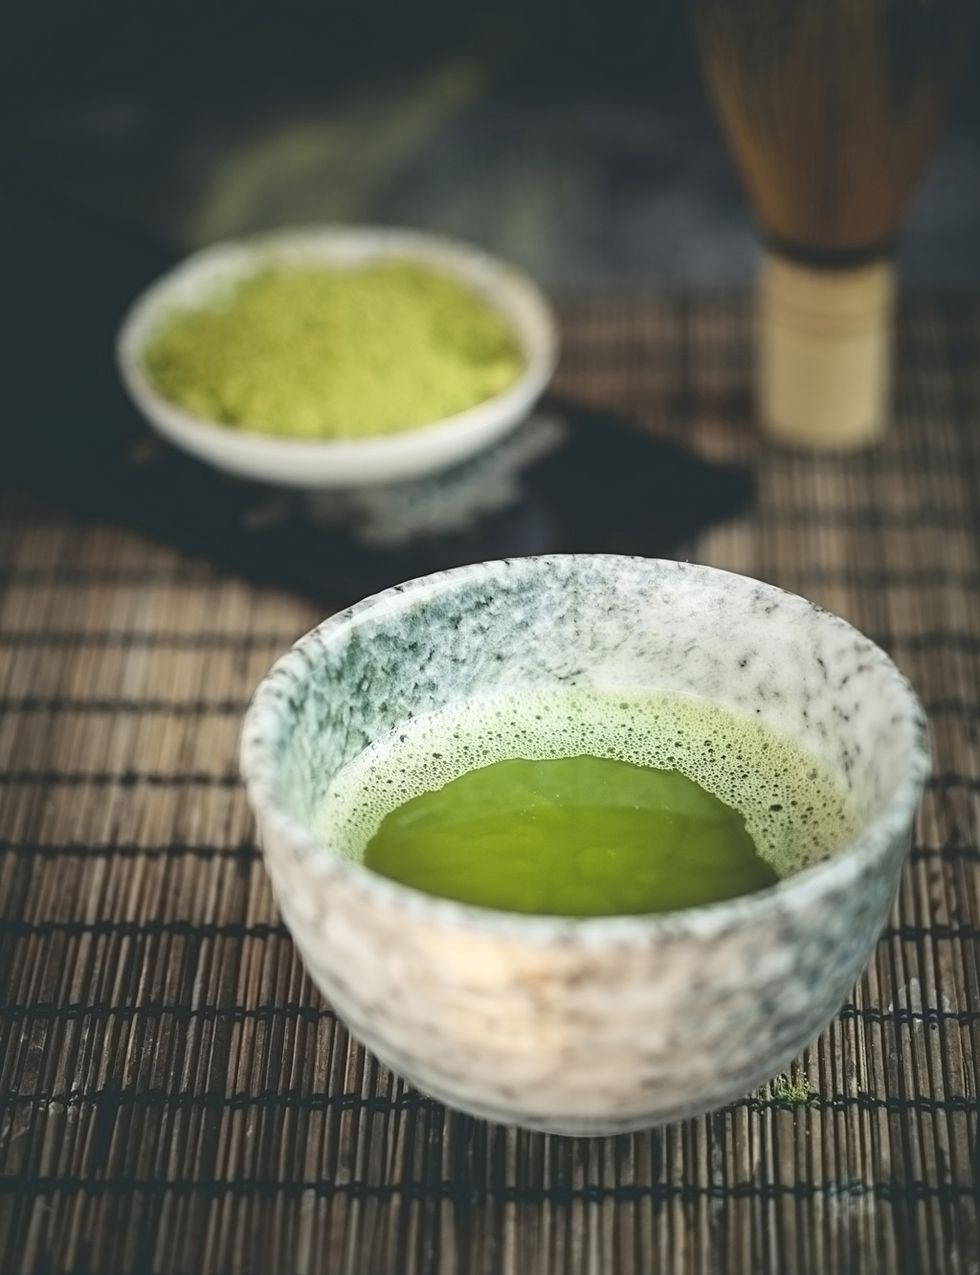 <p>Según Larrea, <strong>una taza de té Matcha equivale a 10-20 veces los antioxidantes del té verde</strong>. “La catequina (EGC) es el antioxidante presente en el té verde y lo que le ha proporcionado tan buena fama, ya que se sabe que es particularmente potente en la lucha contra los radicales libres (partículas reactivas que nos hacen envejecer y enfermar)”, explica.”El galato de epigalocatequina (EGCG) resulta ser la catequina más beneficiosa encontrada en el té. De hecho, un estudio indica que el EGCG <strong>es de 25 a 100 veces más potente que las vitaminas antioxidantes C y E</strong>”, dice. “Este estudio también informó de que tan solo una taza de té verde tiene más efectos antioxidantes que una porción de brócoli, espinaca, zanahorias o fresas. De hecho, según Larrea, el té Matcha contiene <strong>hasta 17 veces más antioxidantes que la mora azul</strong> y más betacarotenos que la zanahoria.&nbsp;</p><p>&nbsp;</p>